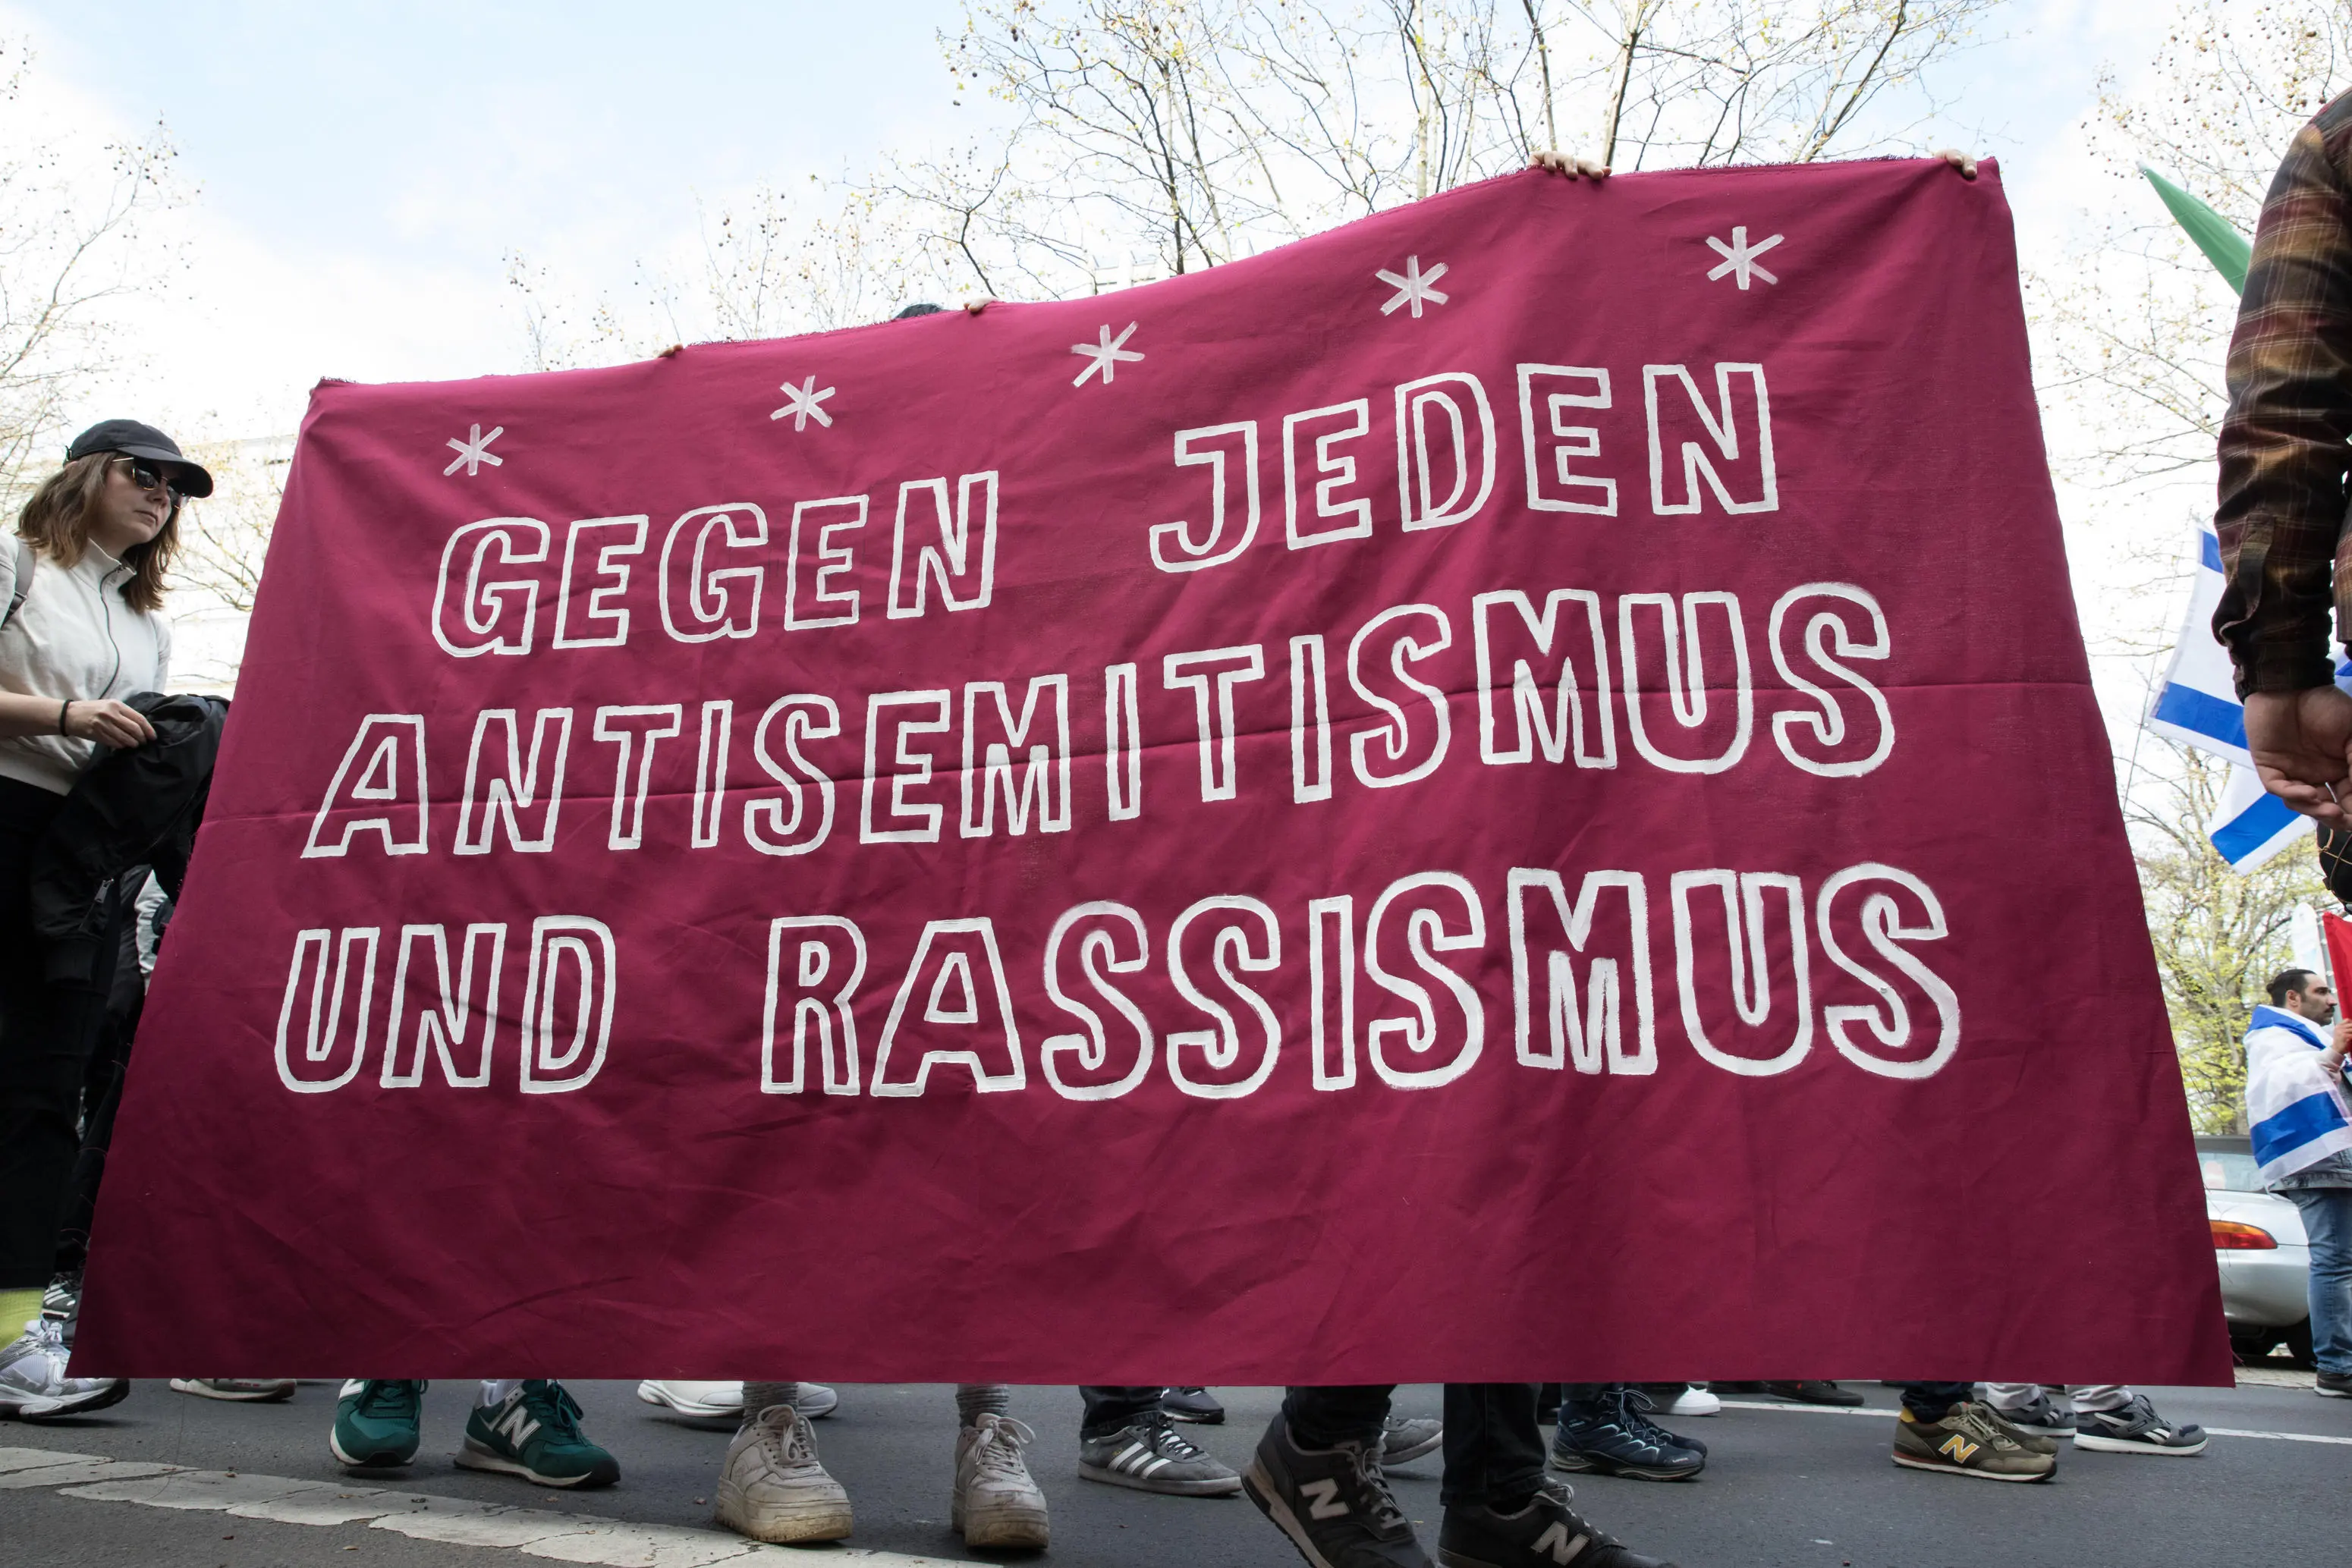 Ein Plakat mit der Aufschrift "Gegen jeden Antisemitismus und Rassismus"